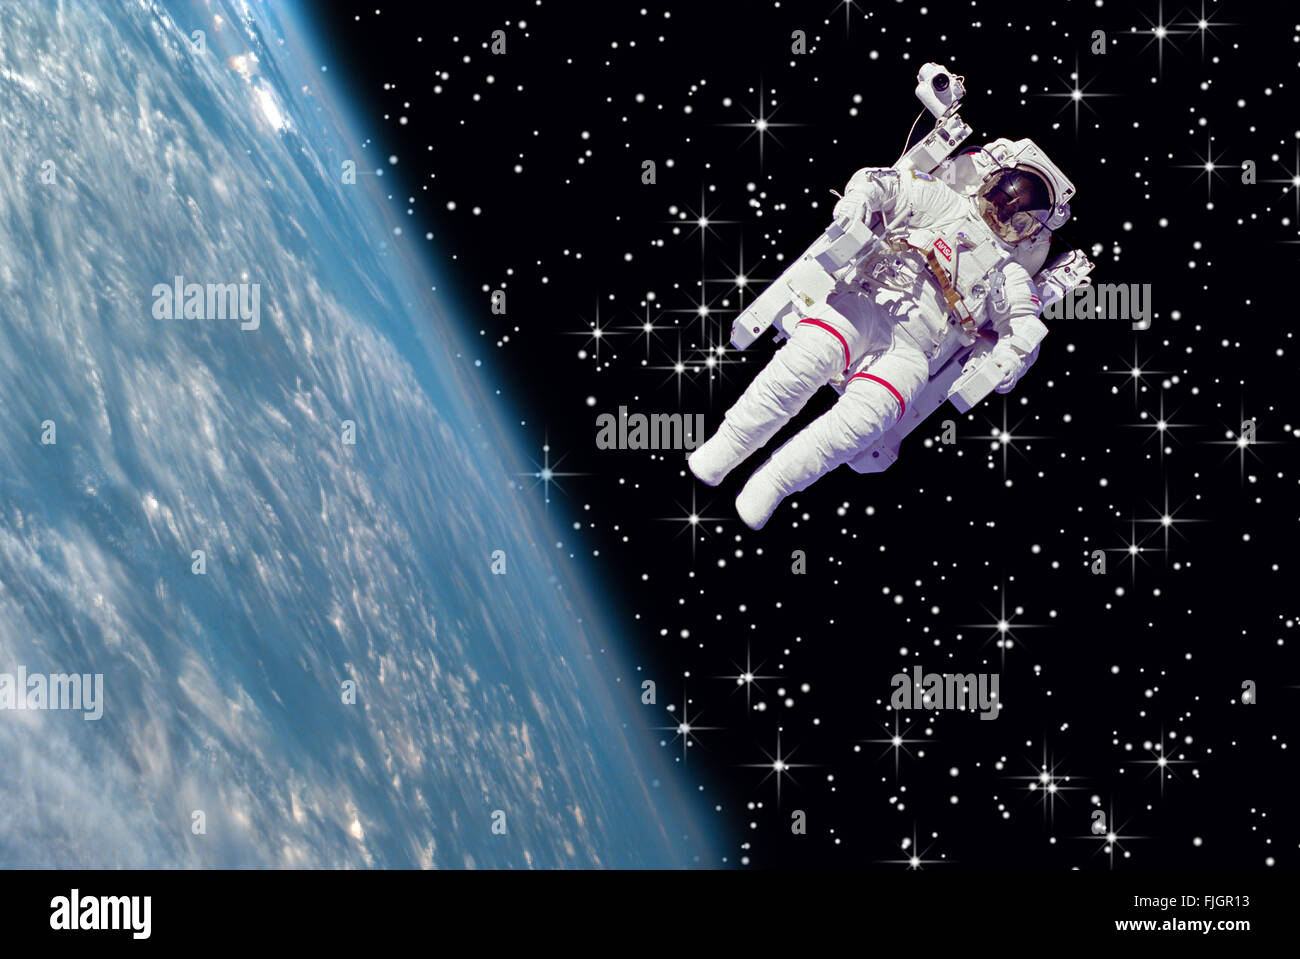 Image de la NASA la terre de l'astronaute de l'espace étoile flottante Banque D'Images